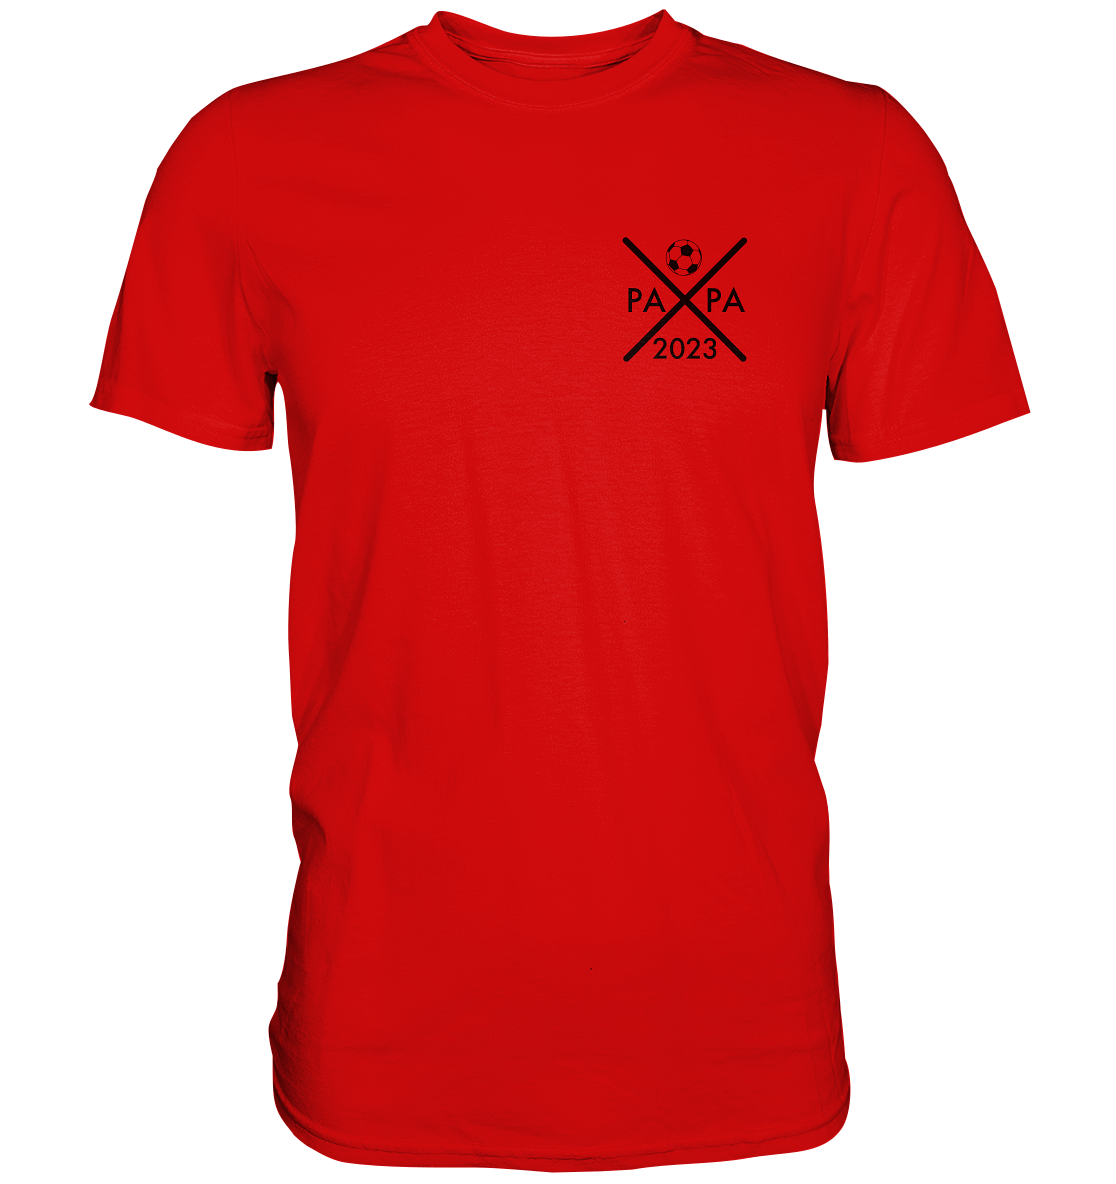 Ein Papa T-Shirt mit minimalistischem Design von ShirtDesire. Personalisierter Druck, hochwertige Materialien. Perfekt für stolze Väter, die ihren eigenen Stil ausdrücken möchten